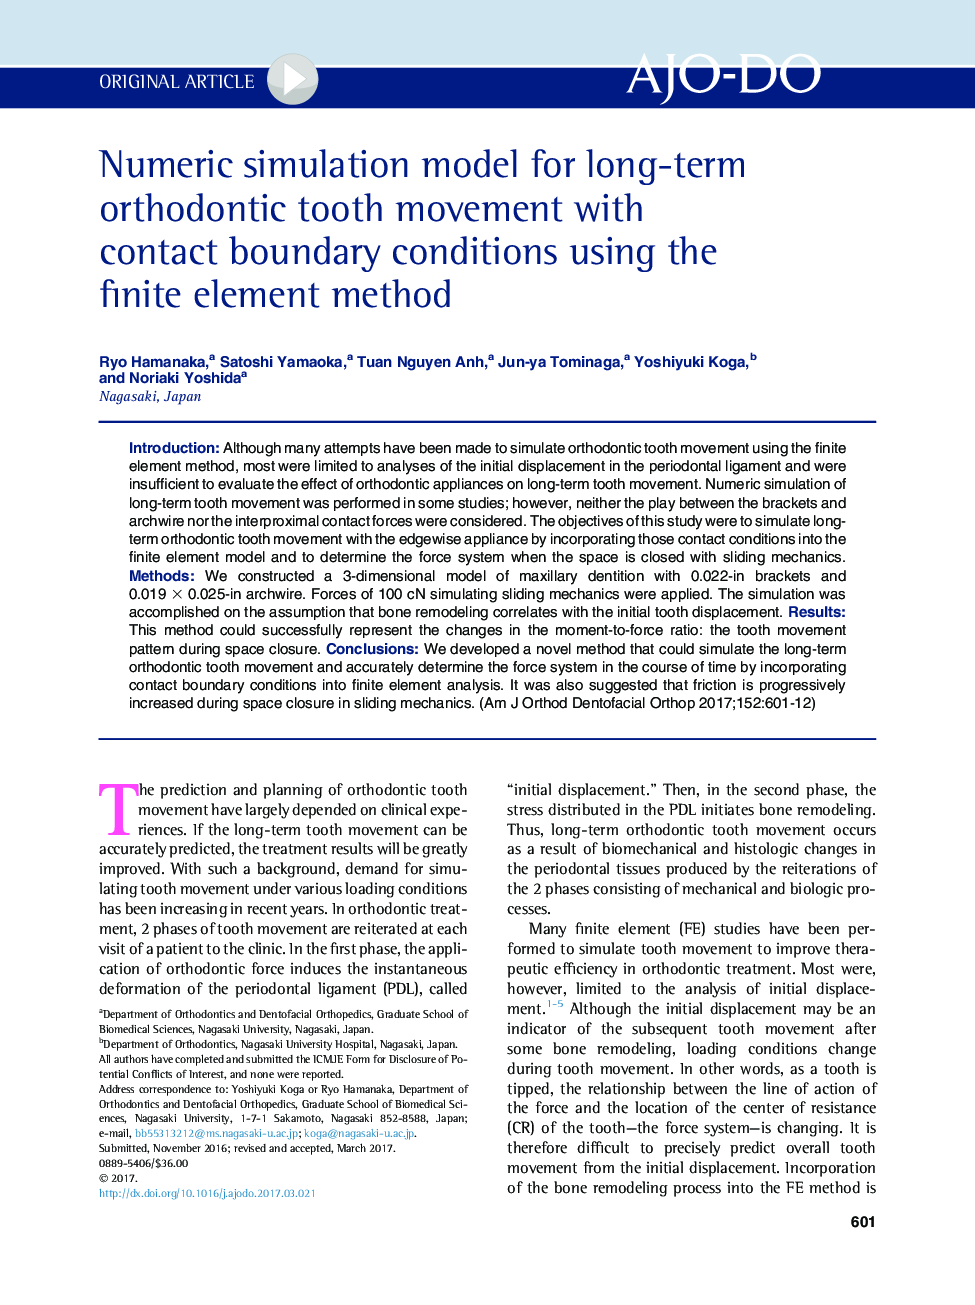 مدل شبیه سازی عددی برای حرکات دندانی ارتودنسی درازمدت با شرایط مرزی تماس با استفاده از روش المان محدود 